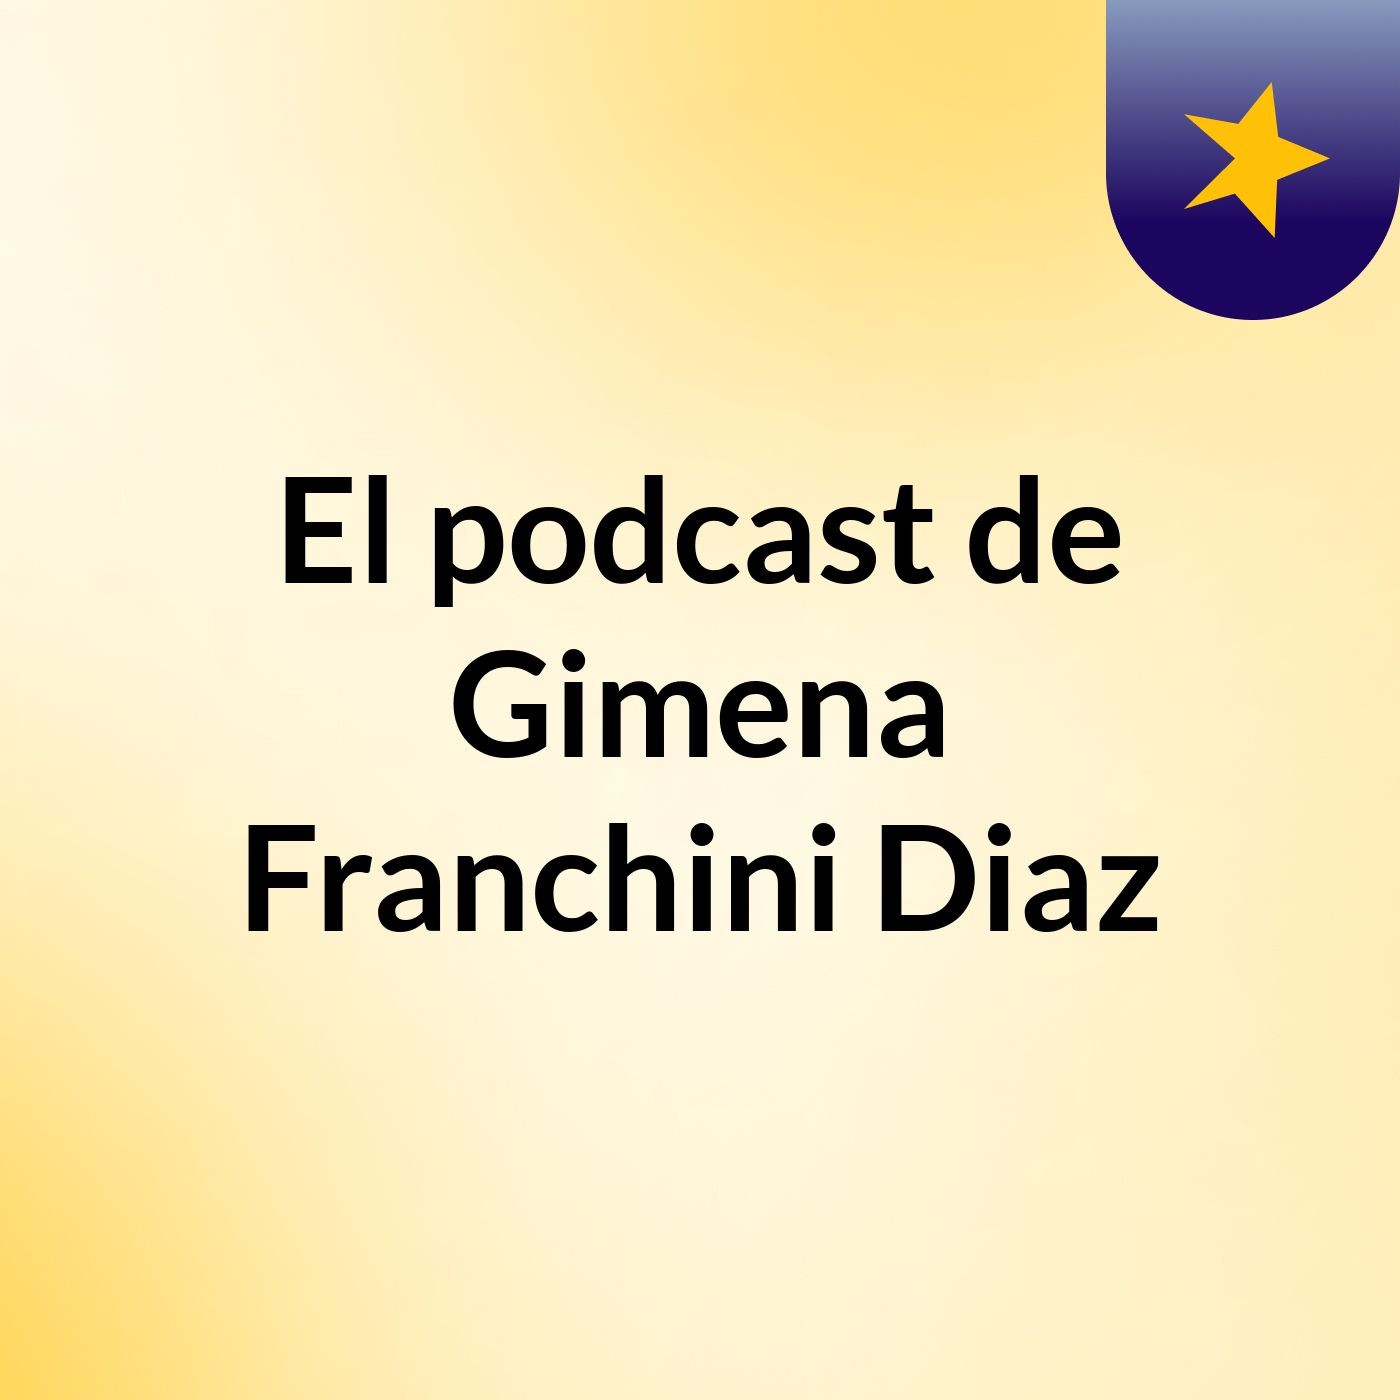 El podcast de Gimena Franchini Diaz